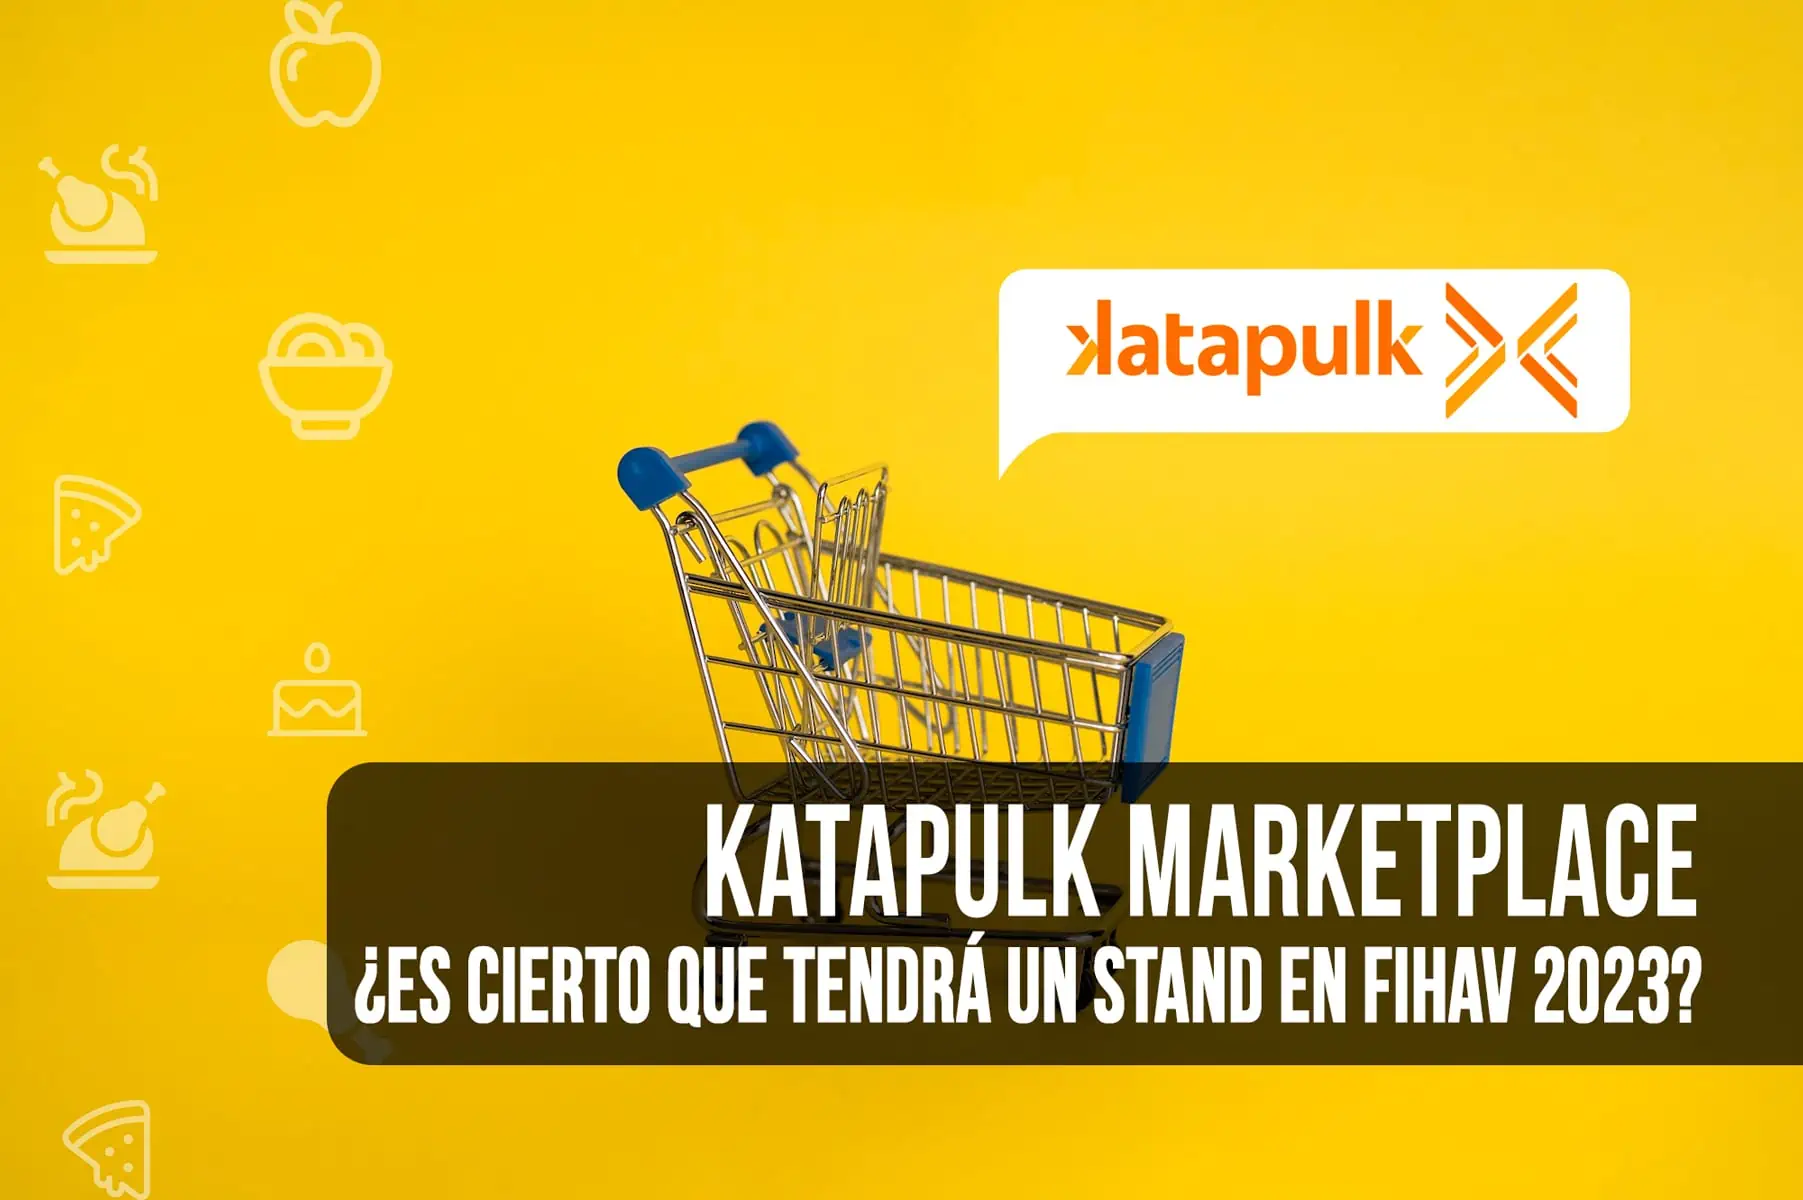 ¿Es Cierto que Katapulk Marketplace Tendrá un Stand en FIHAV 2023?